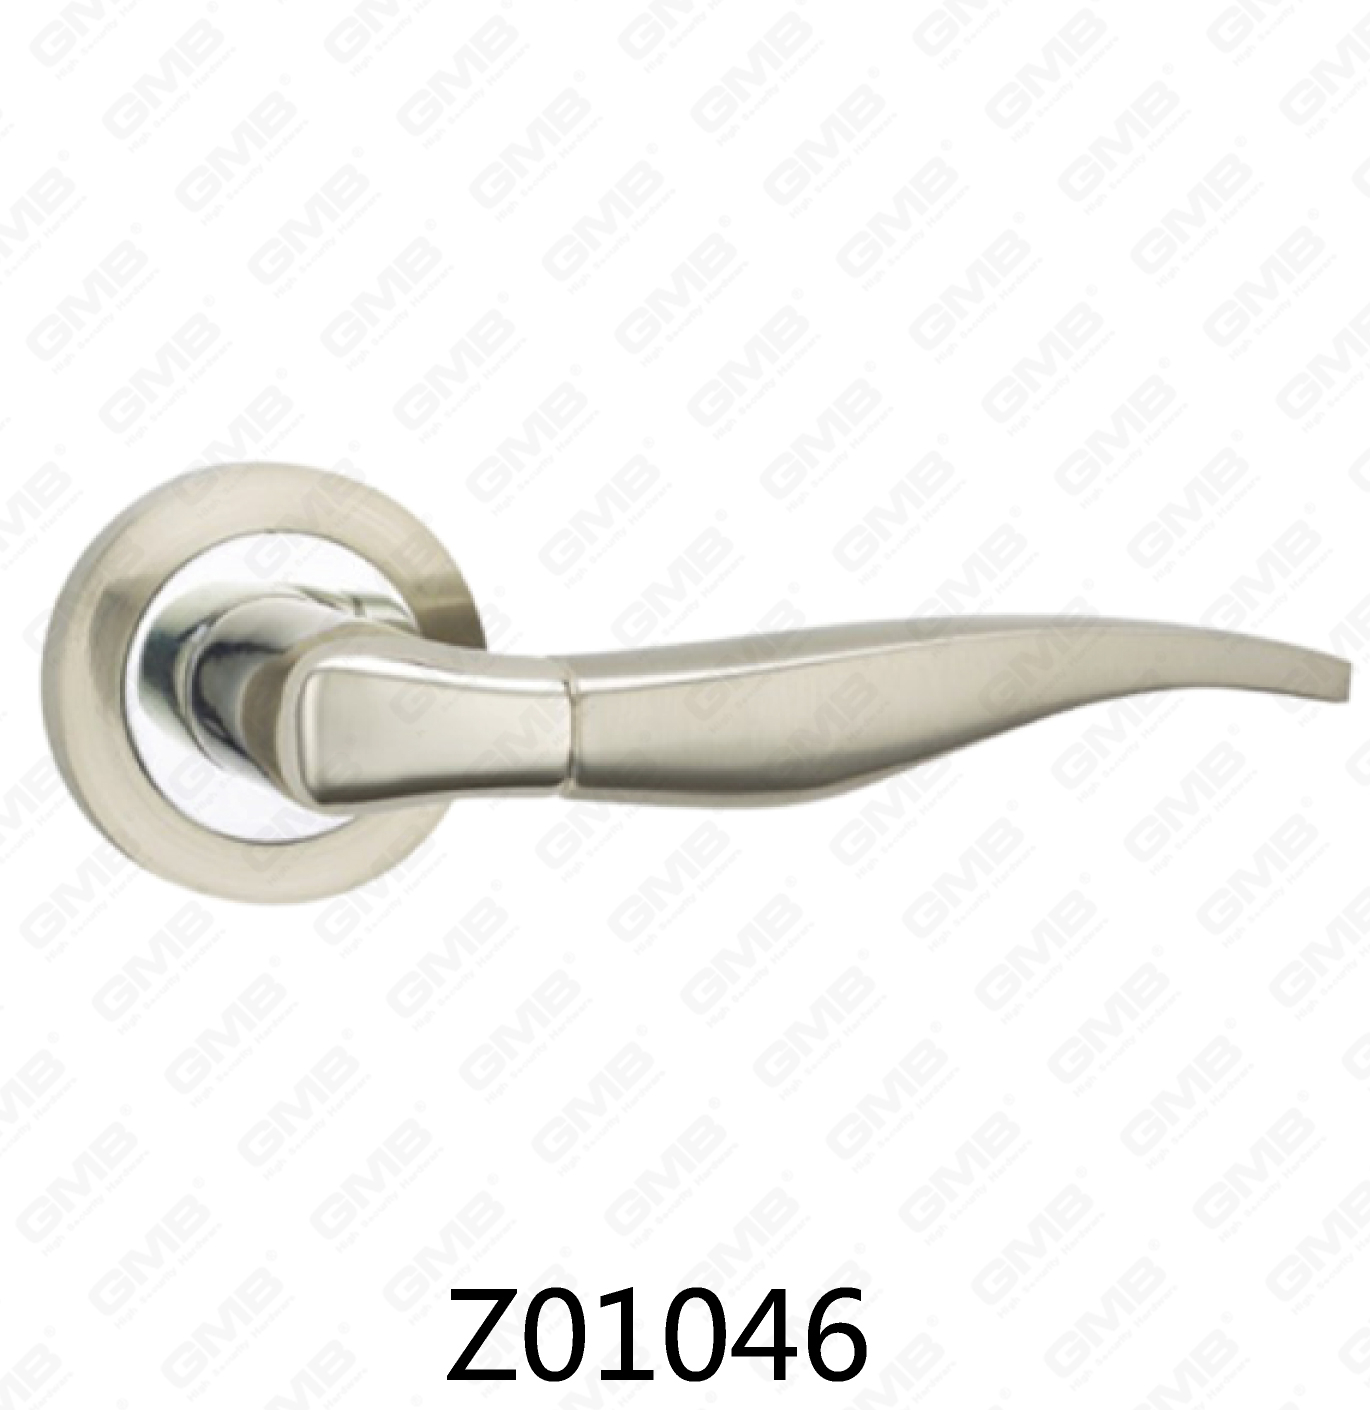 ידית דלת רוזטה מסגסוגת אבץ של Zamak עם רוזטה עגולה (Z01046)